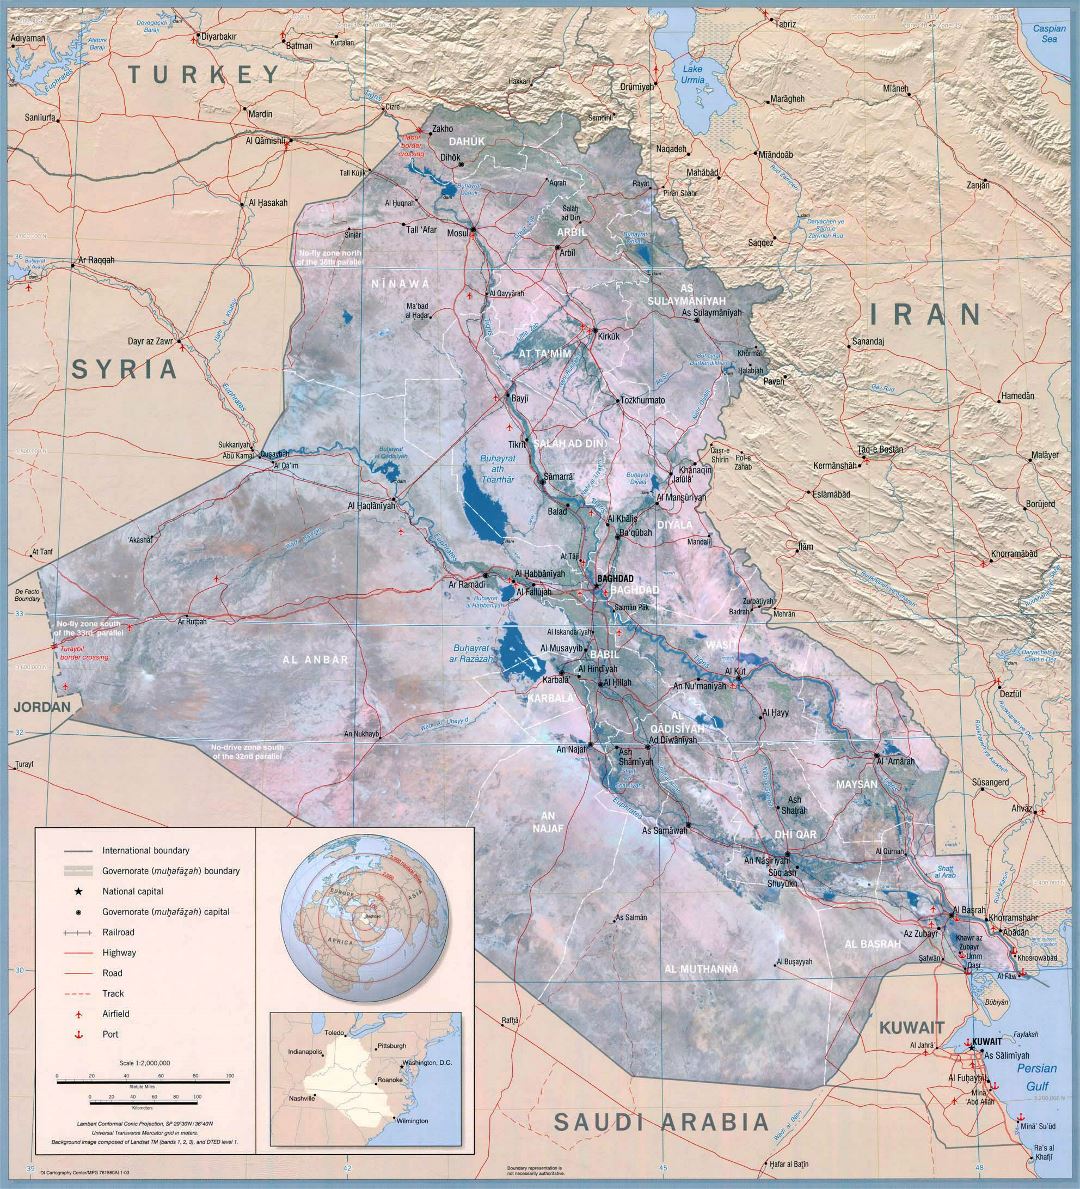 Grande detallado mapa político mural de Irak - 2003